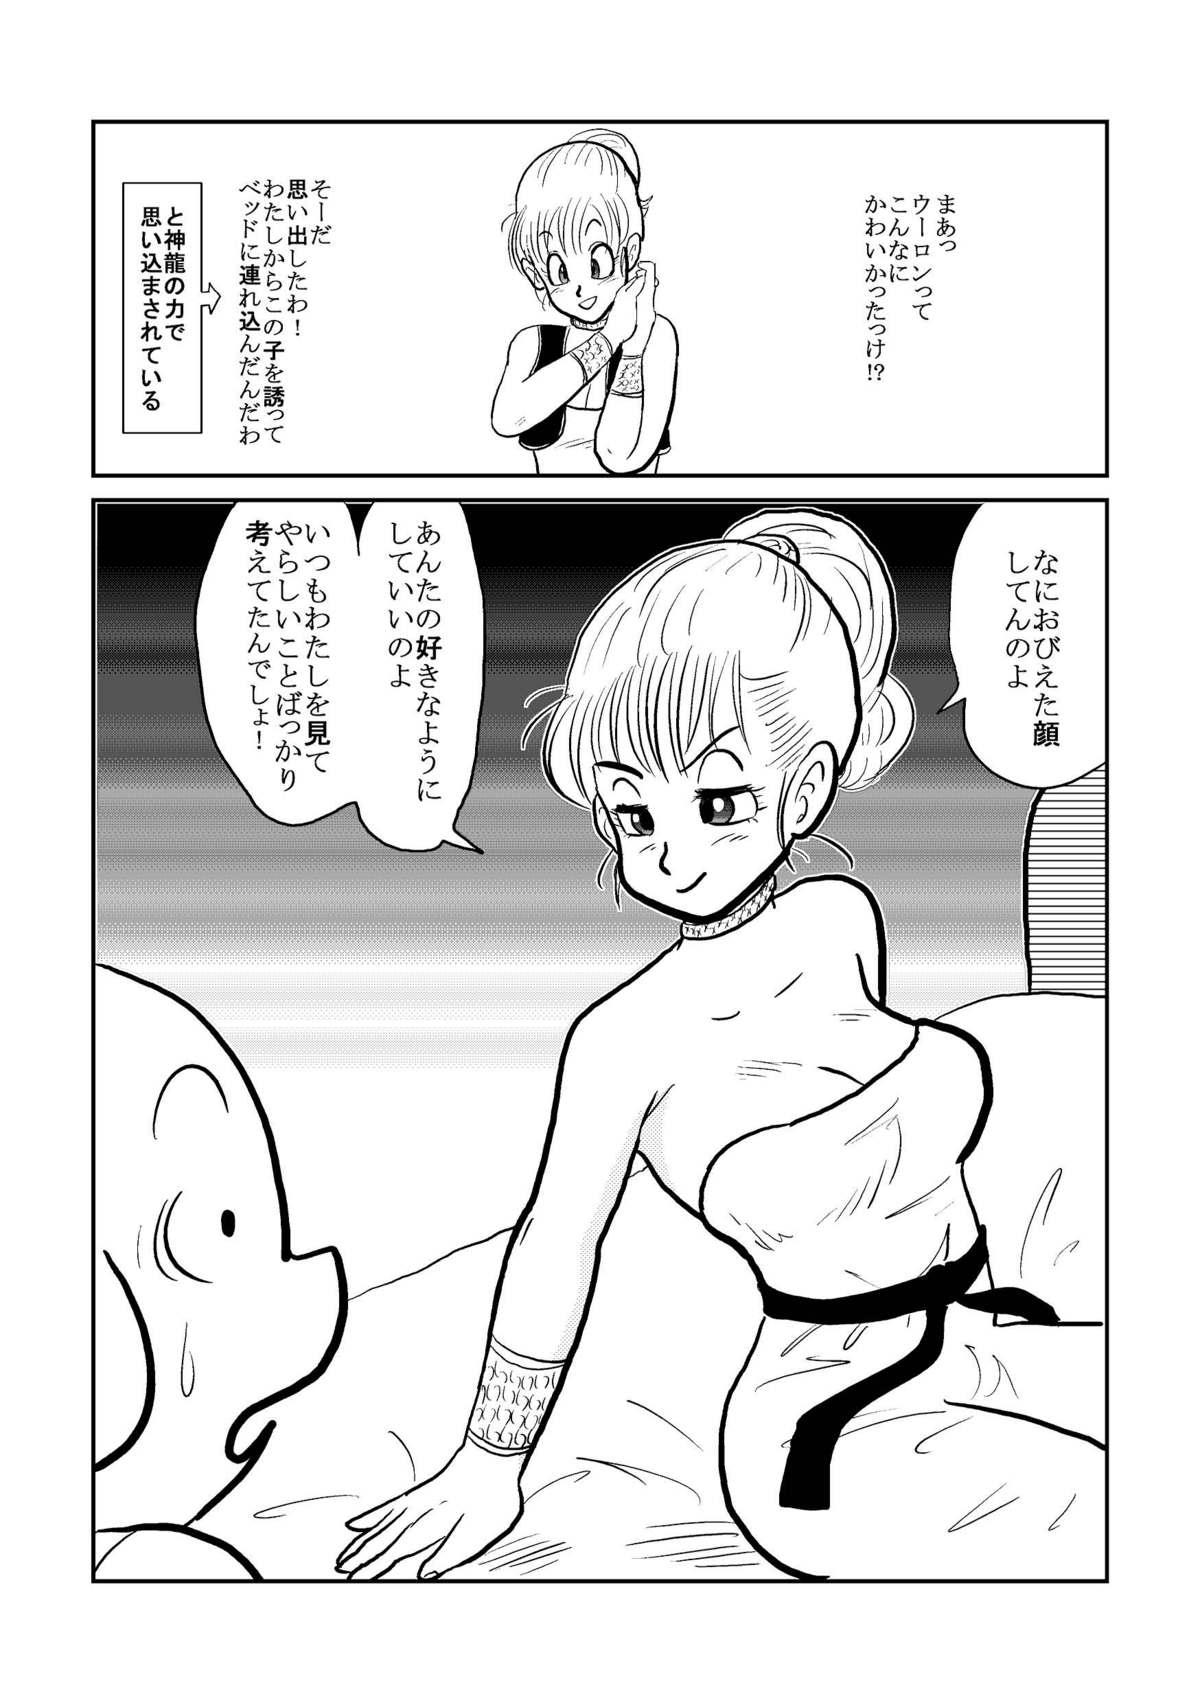 Spanking DB Gaiden - Oolong no Negai no Maki - Dragon ball Pareja - Page 9